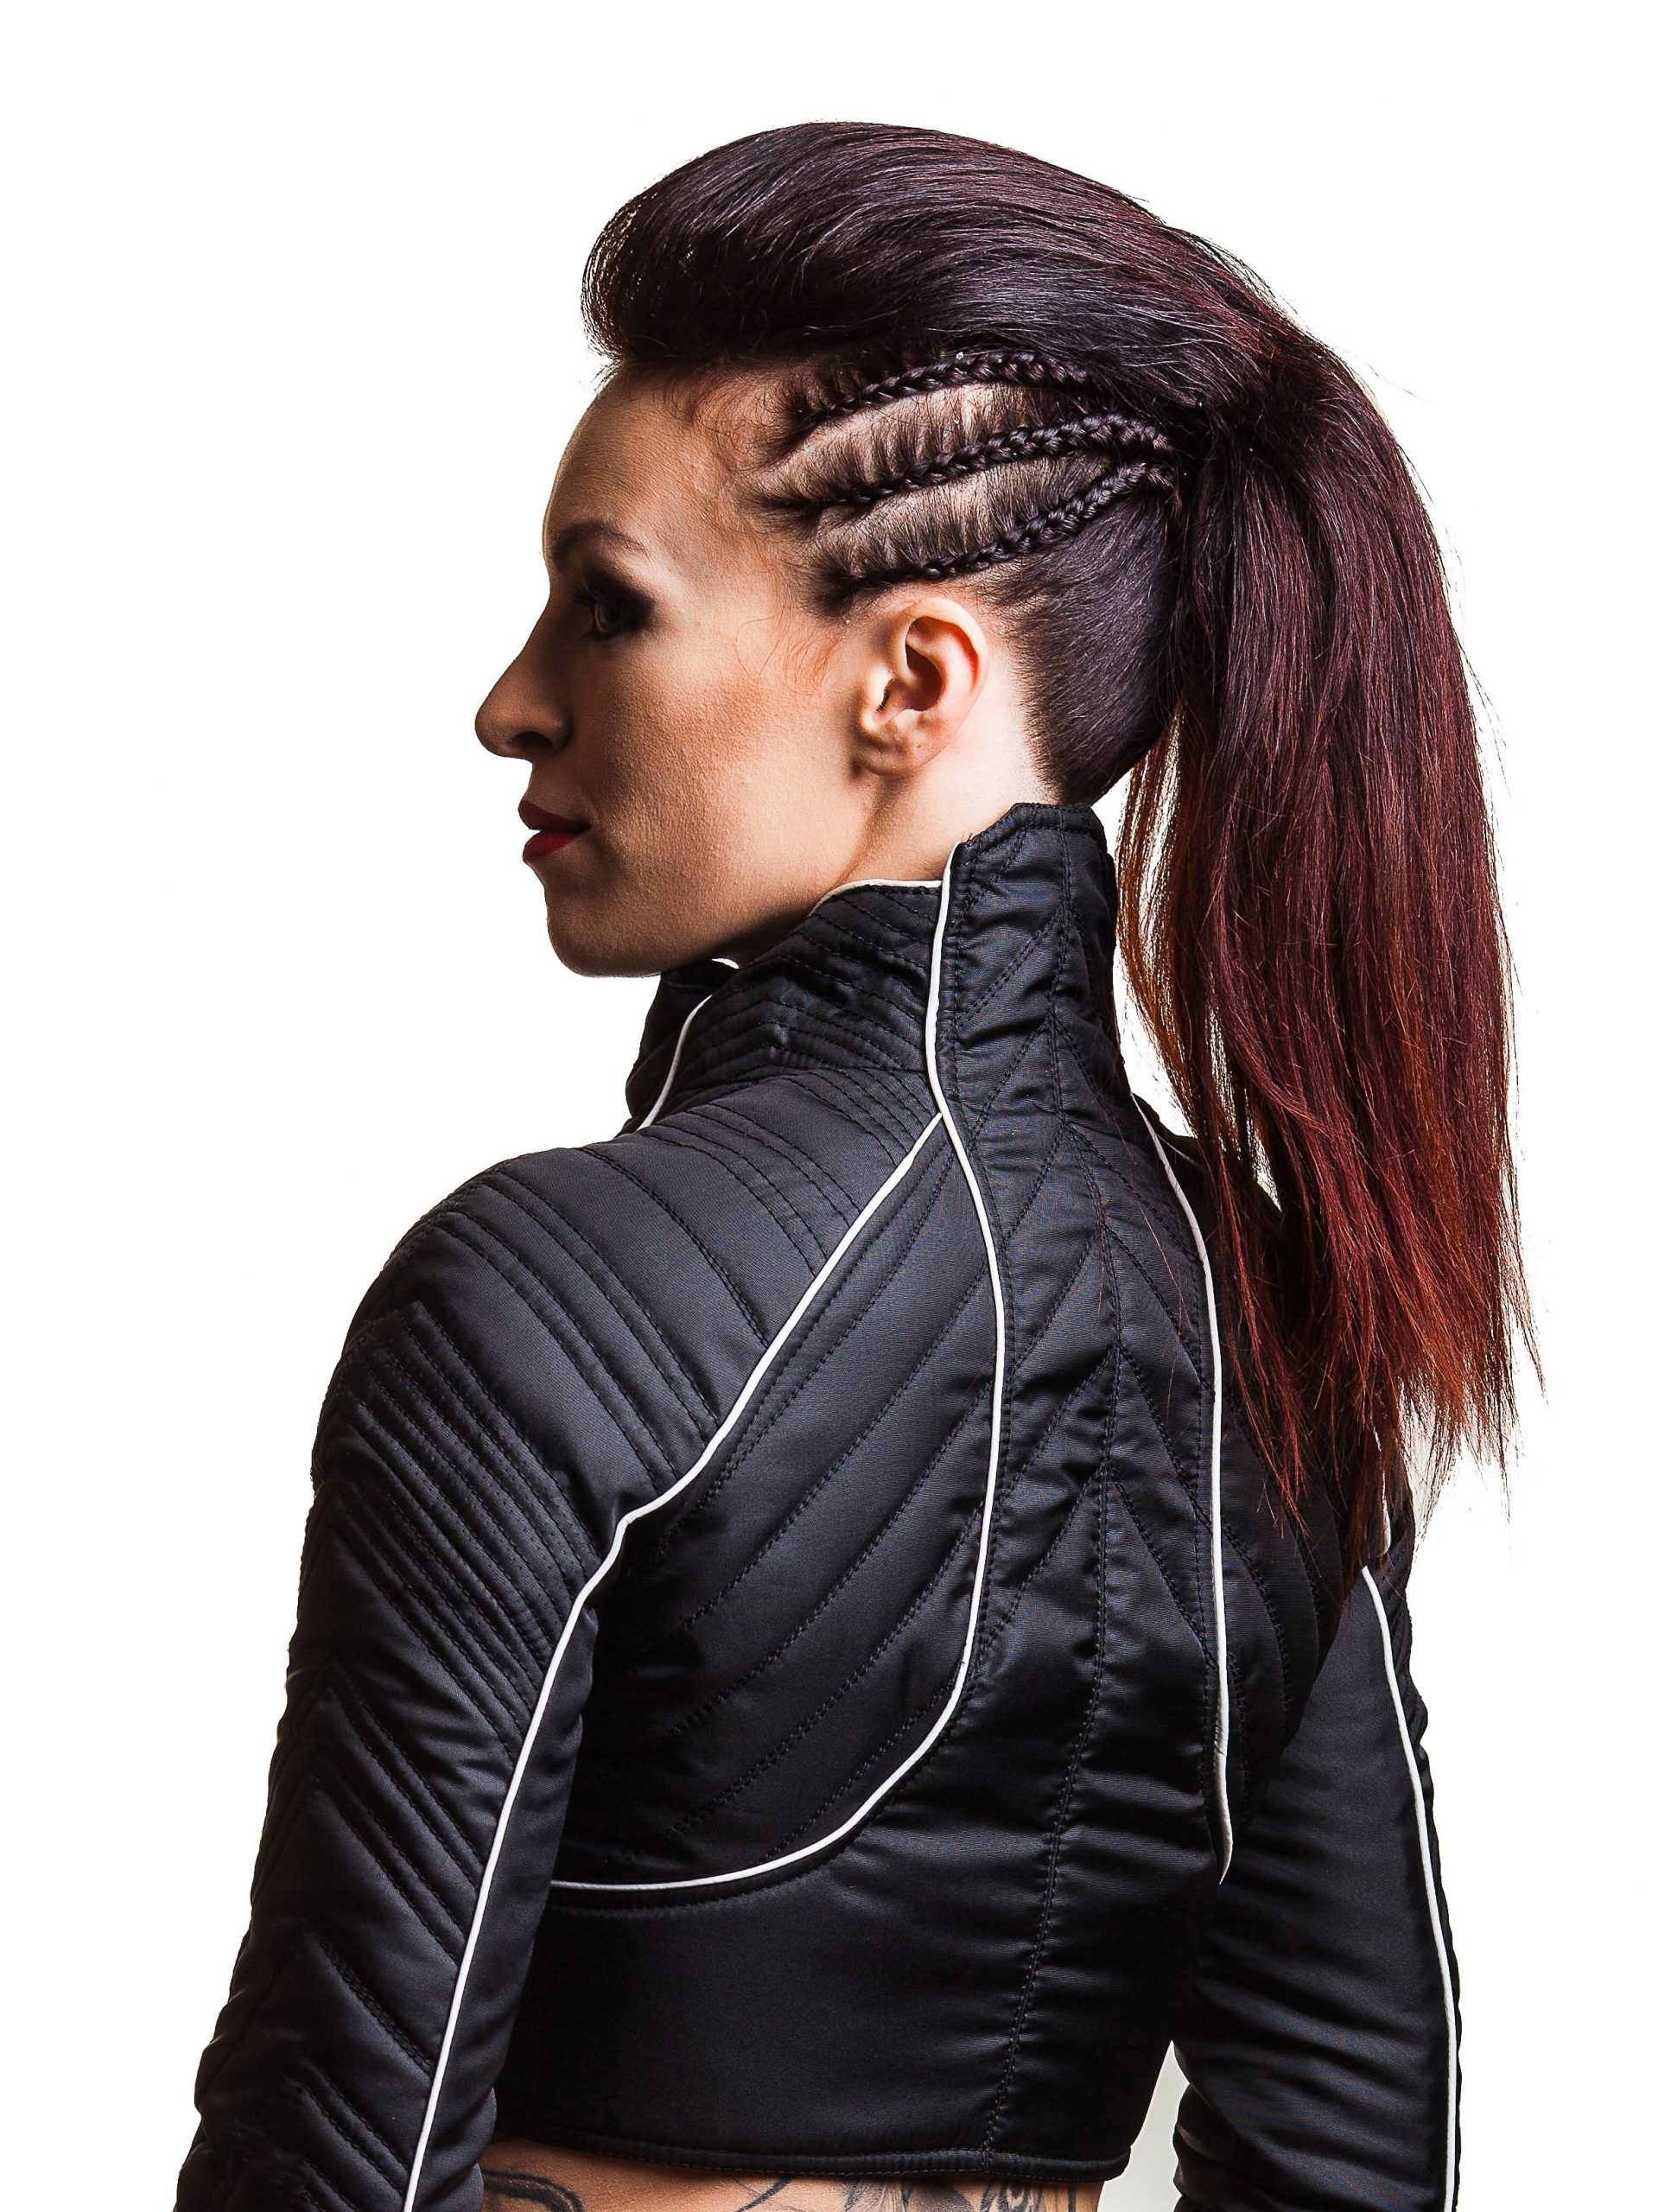 cyberpunk futuristic hair